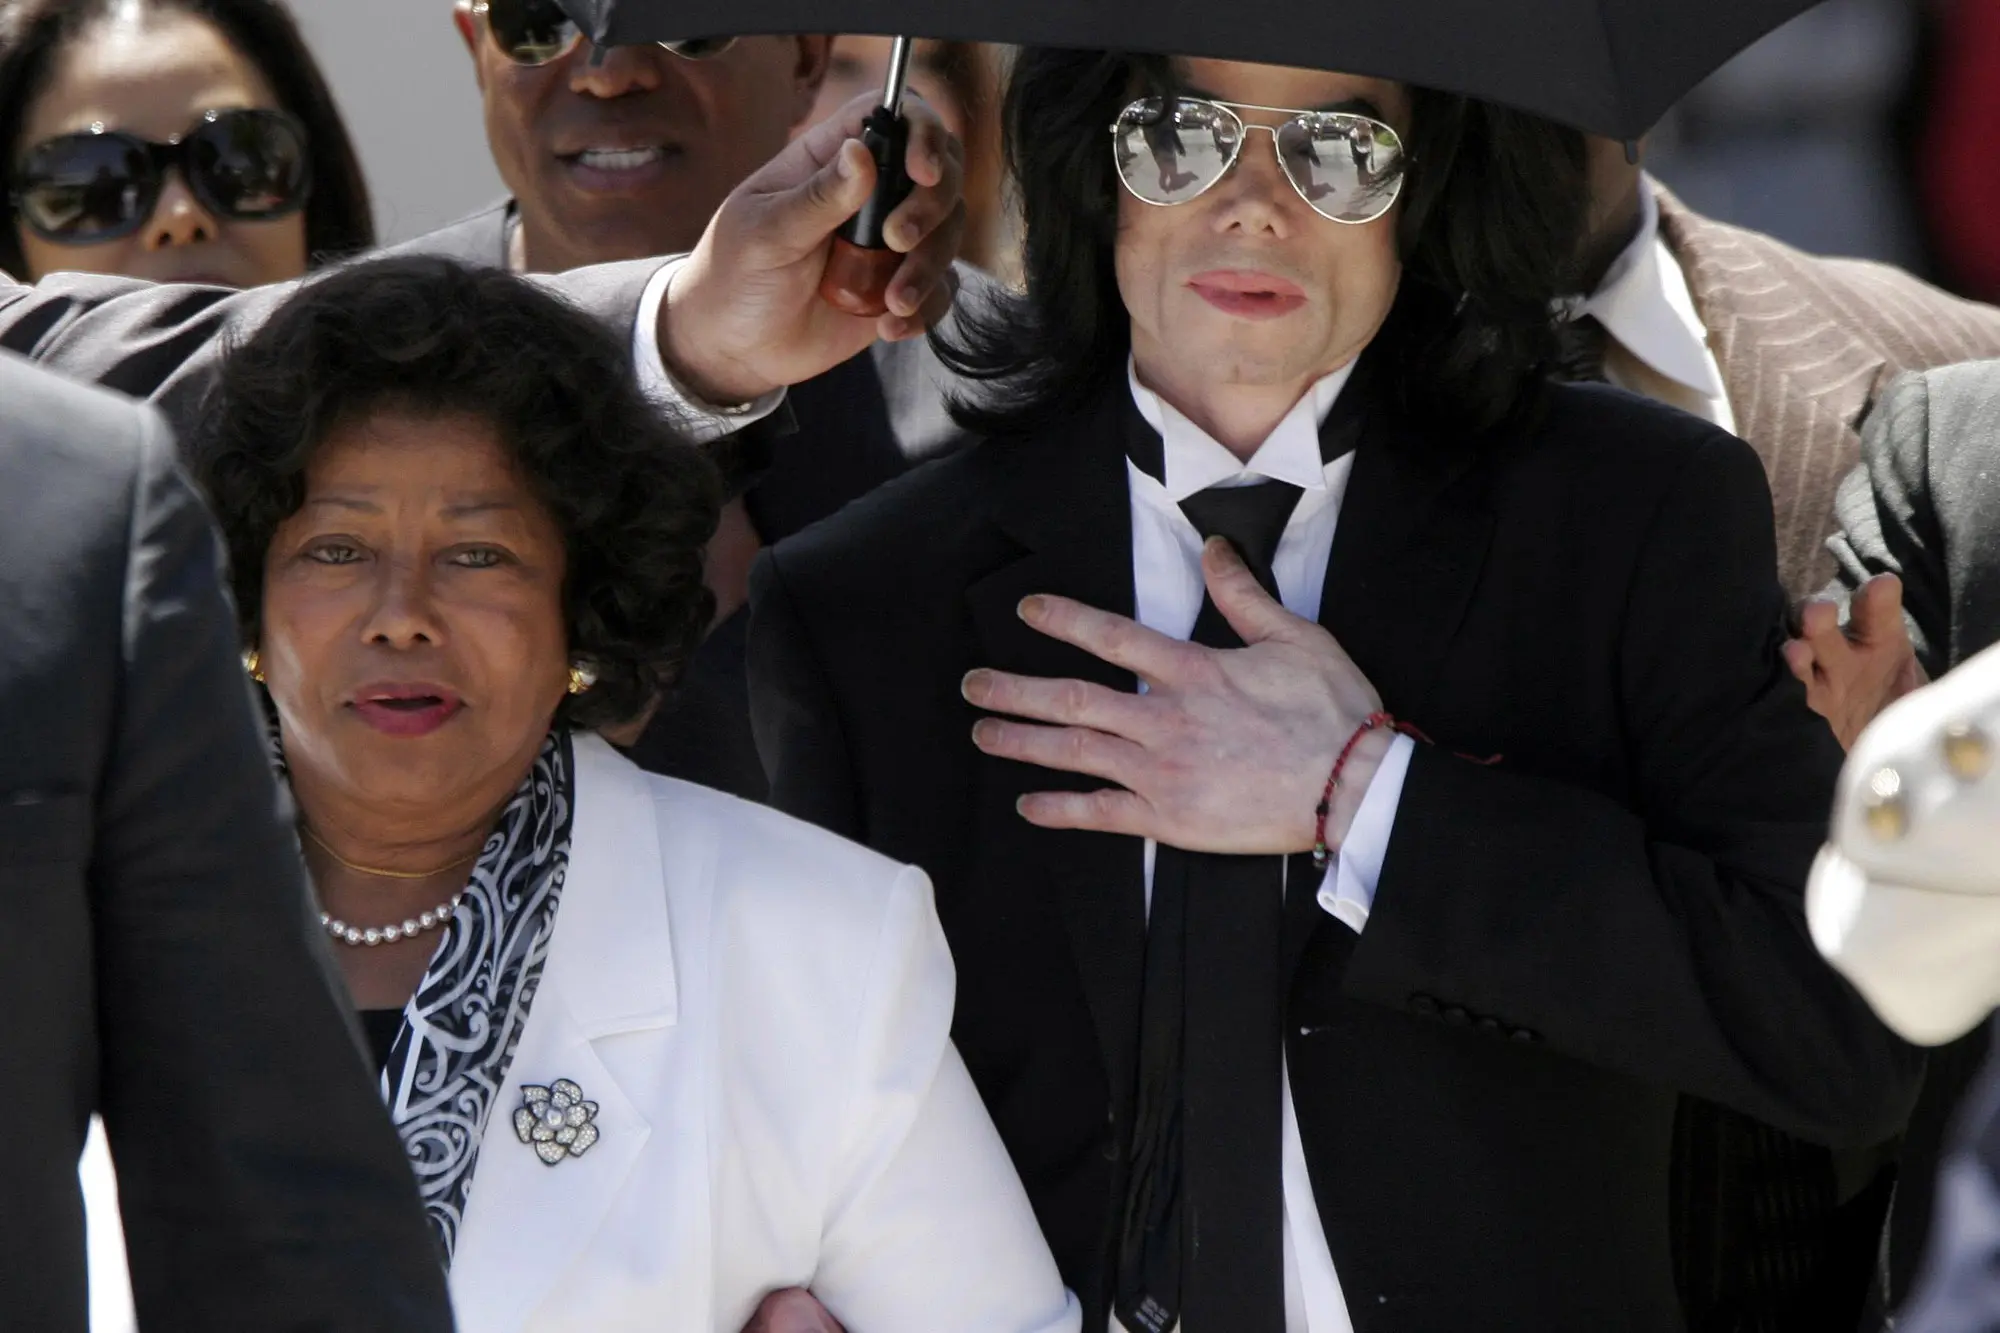 Shuma marramendëse që ka përfituar nëna e Michael Jackson që nga vdekja e djalit